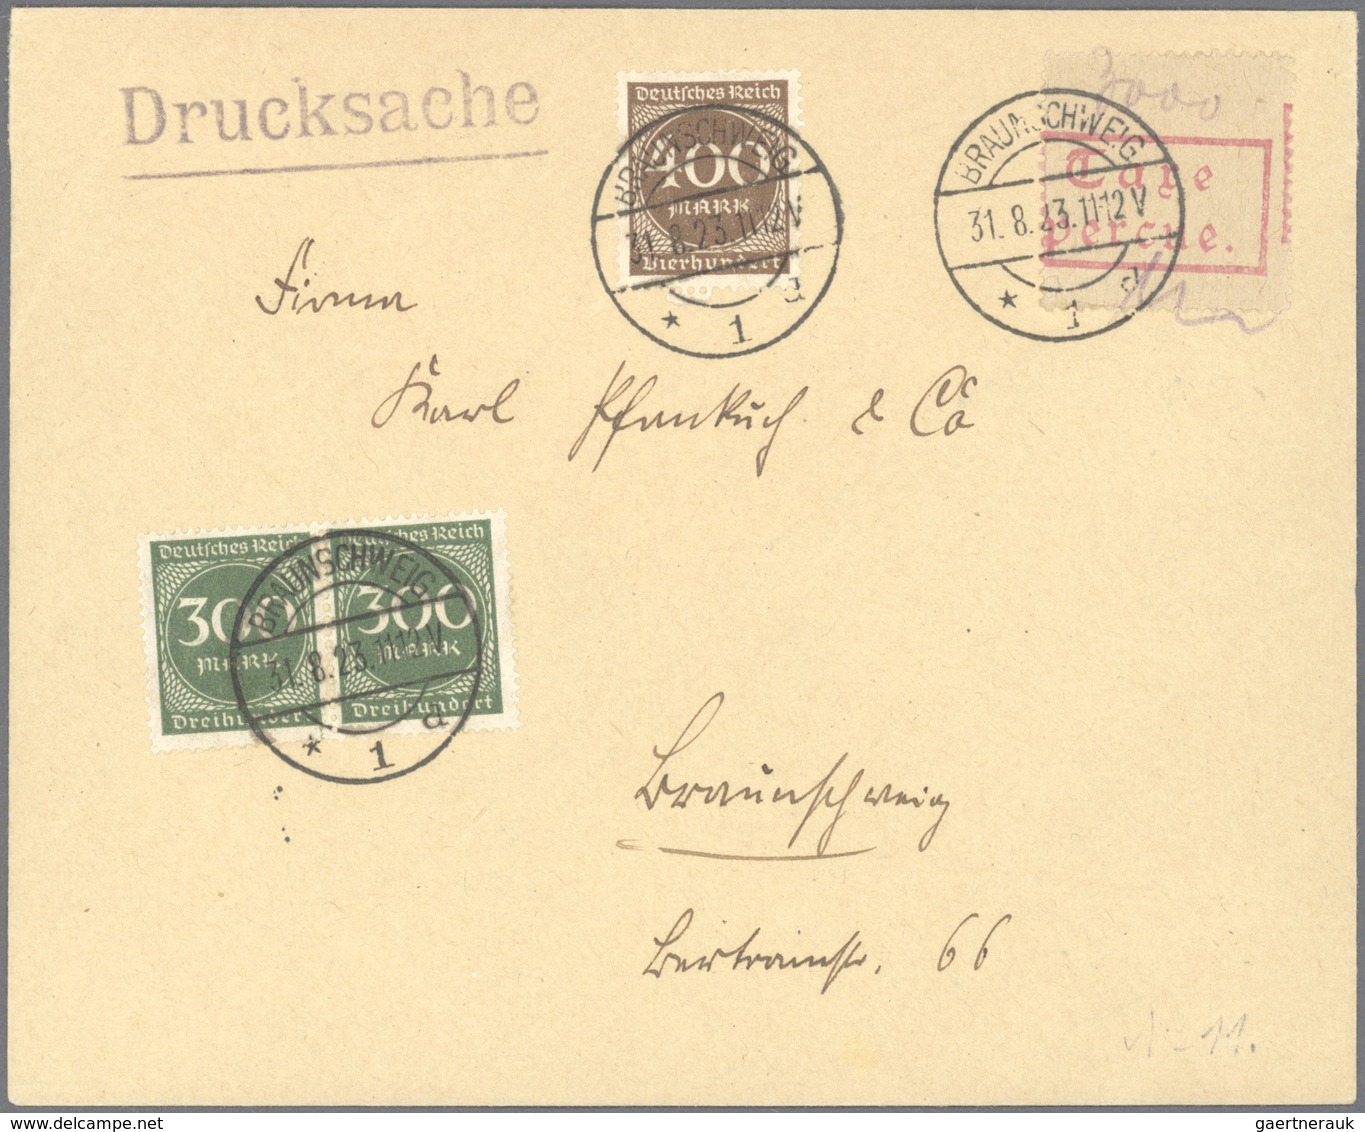 Deutsches Reich - Inflation: 1923, interessante Sammlung "Barfrankaturen" inkl. Postfreistempel und